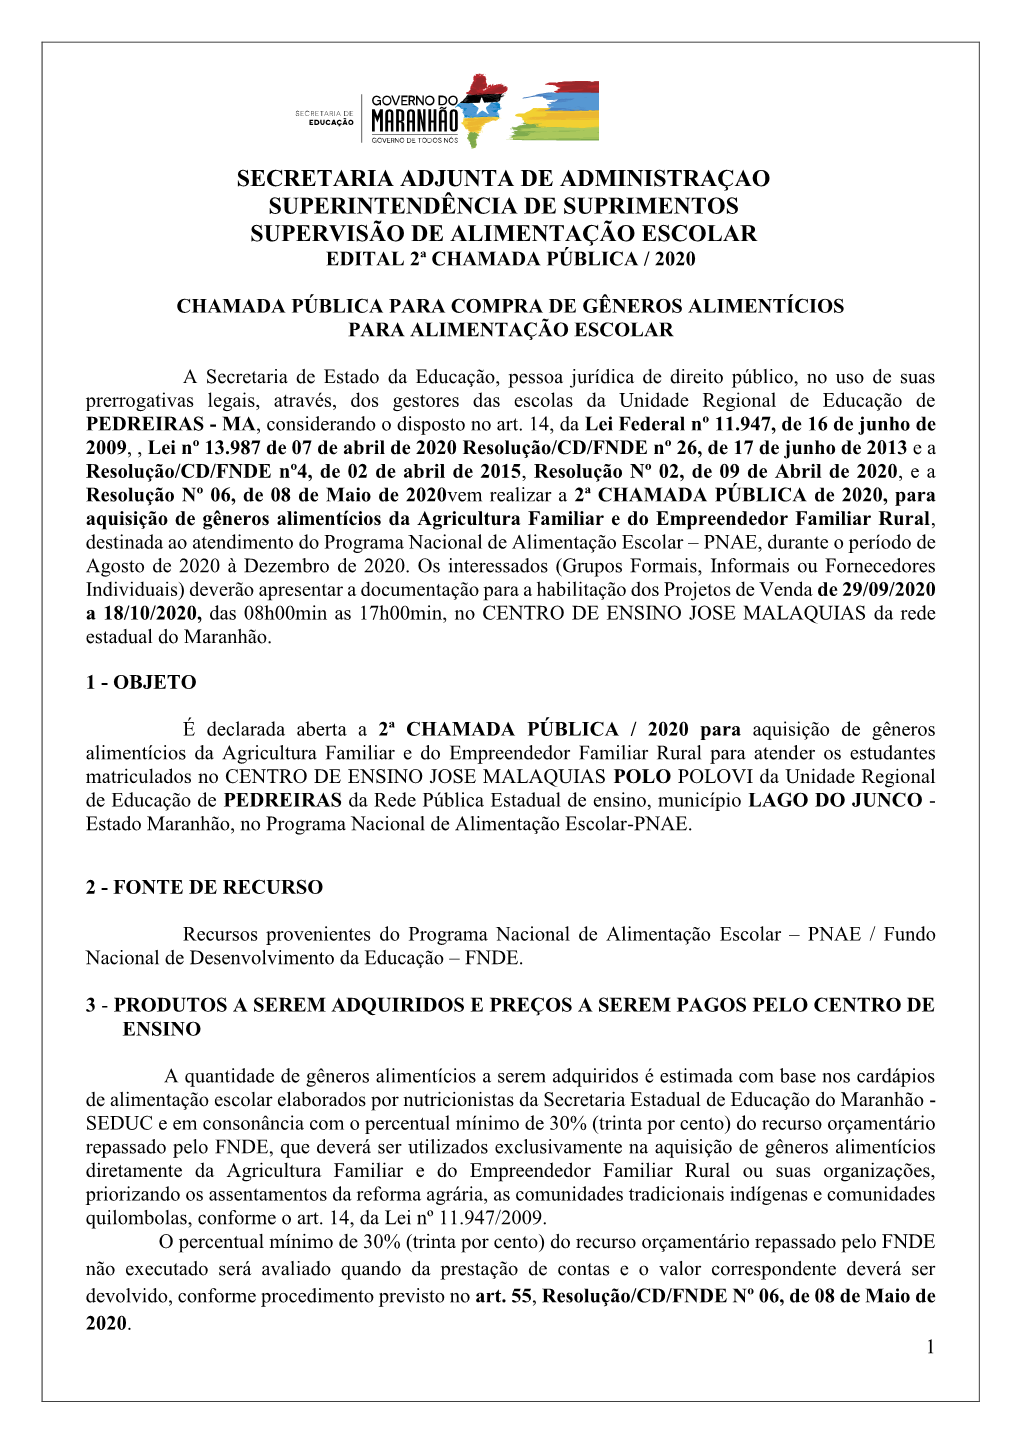 Secretaria Adjunta De Administraçao Superintendência De Suprimentos Supervisão De Alimentação Escolar Edital 2ª Chamada Pública / 2020